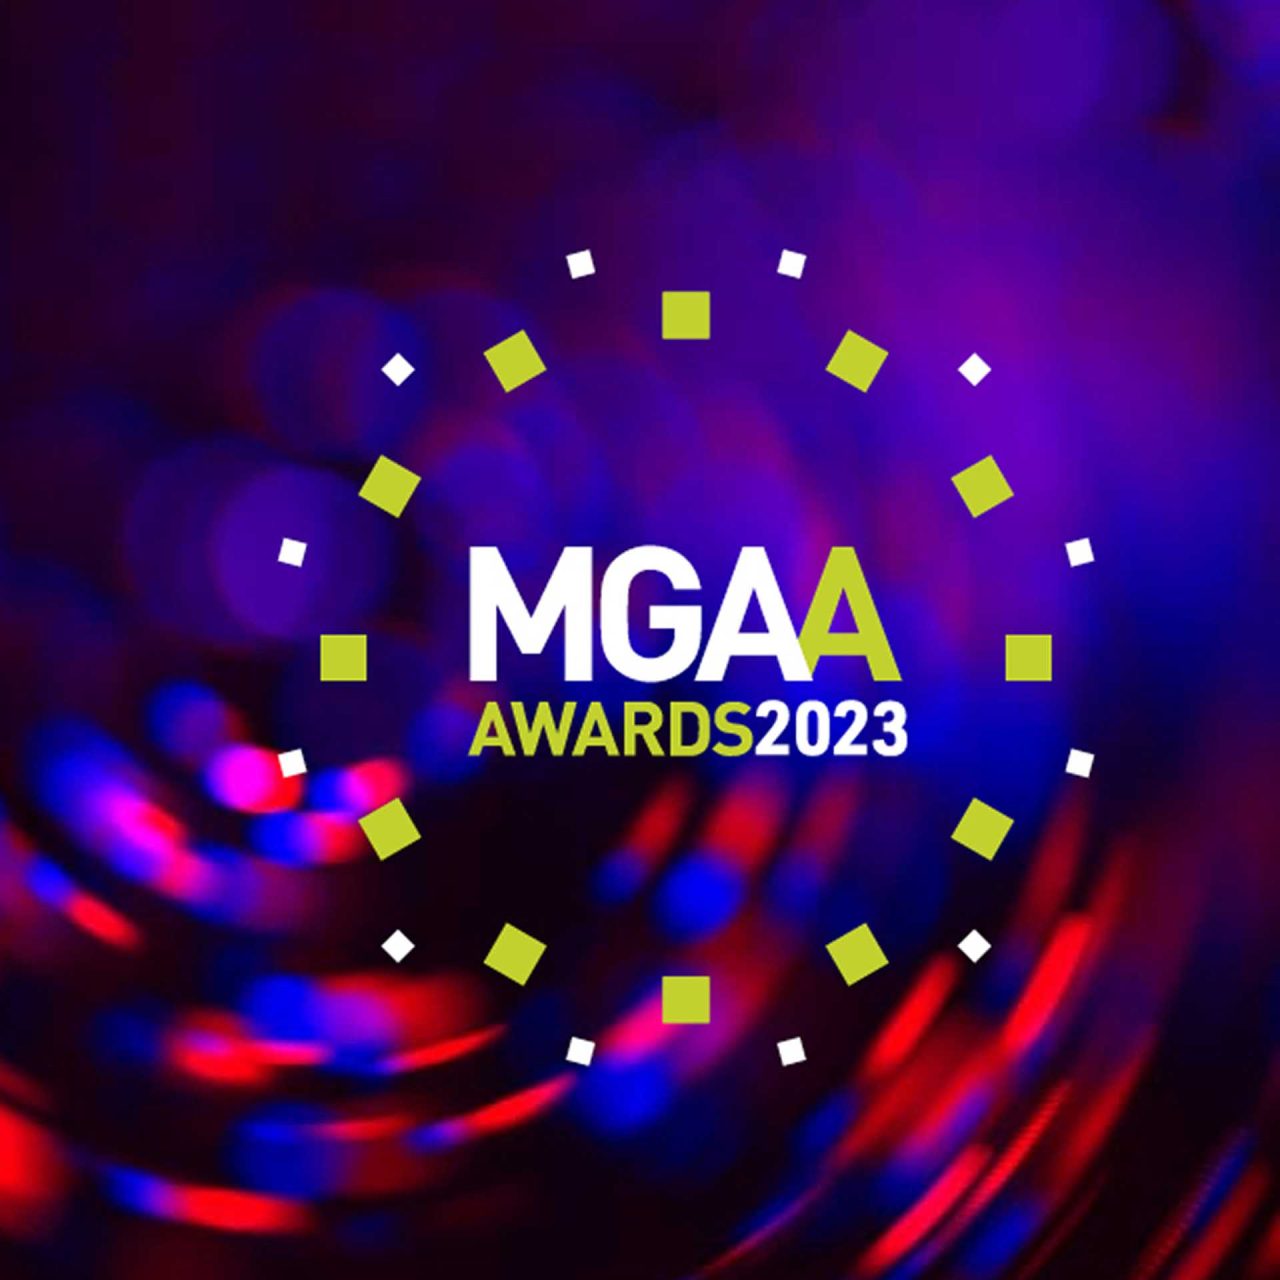 MGAA awards